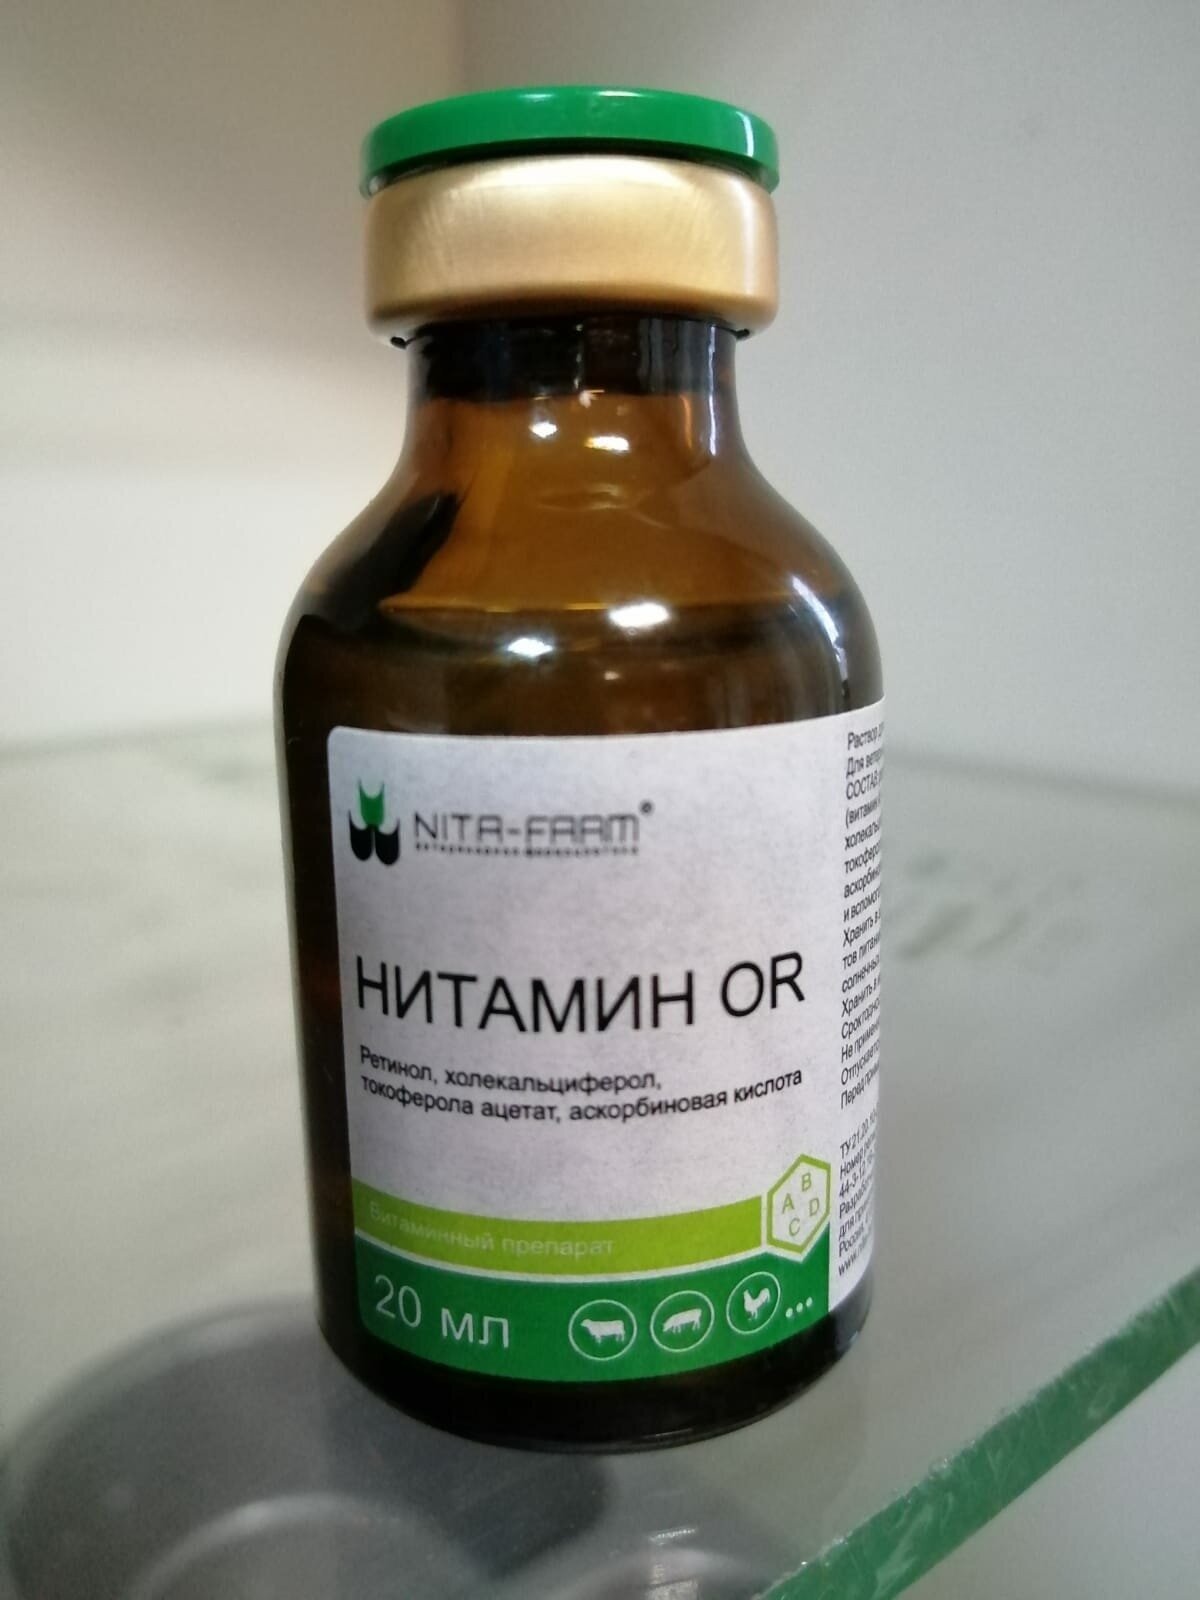 Раствор NITA-FARM Нитамин, 20 мл